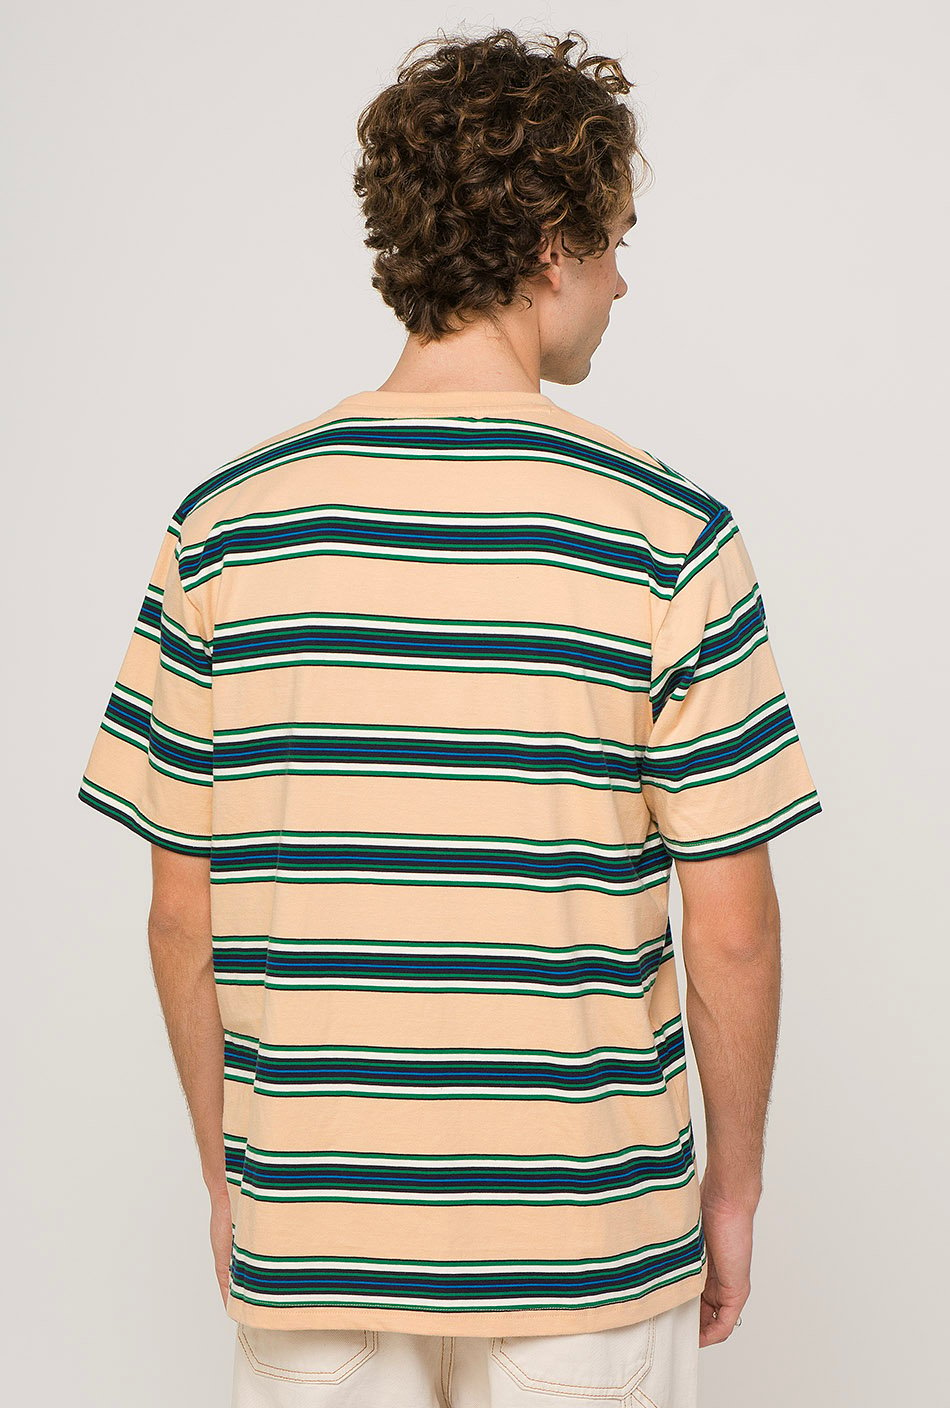 Dickies Lithia Springs T-Shirt mit Streifen